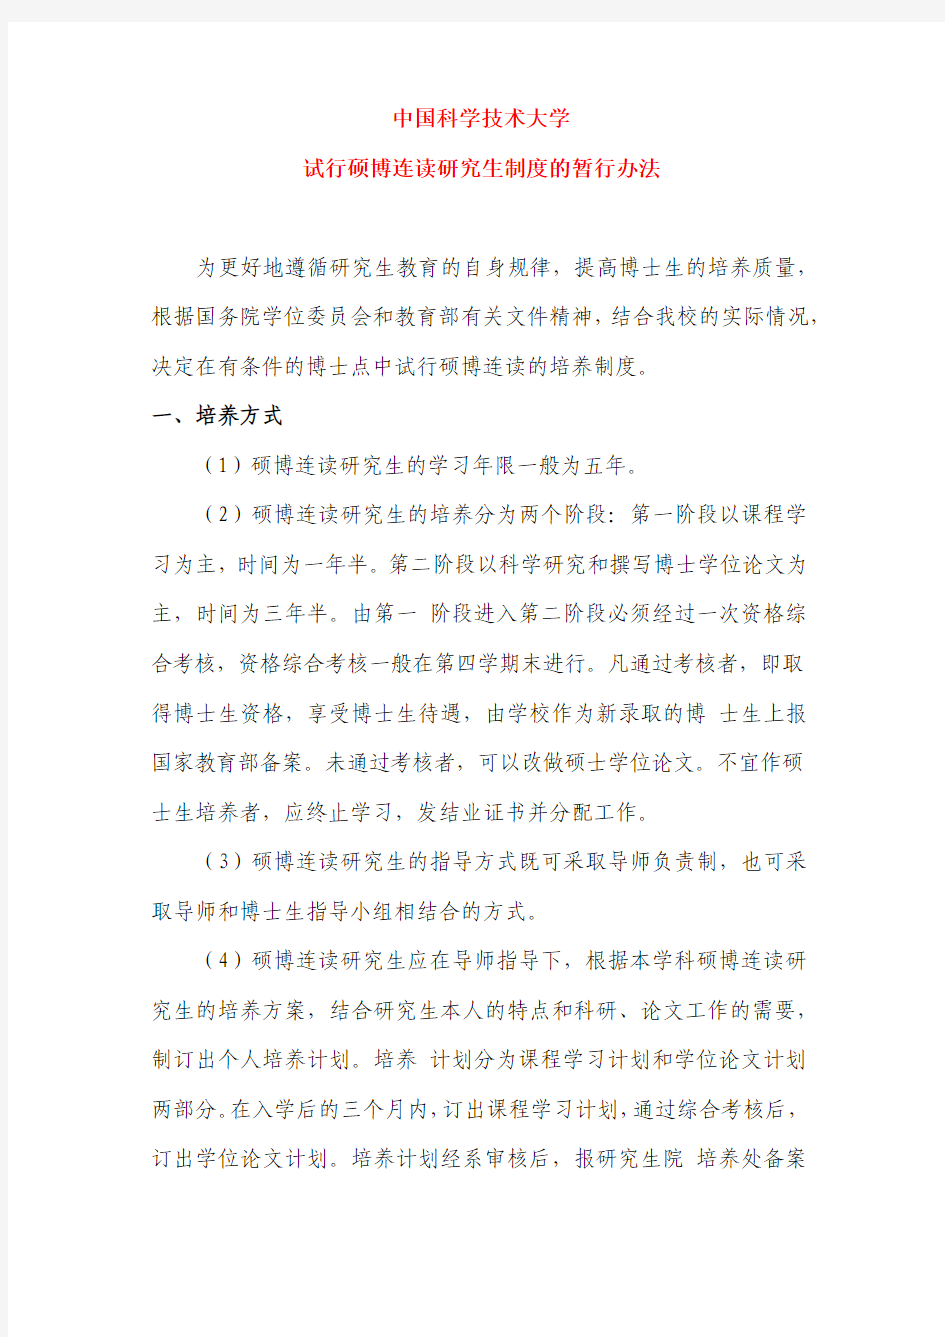 中国科学技术大学试行硕博连读研究生制度的暂行办法